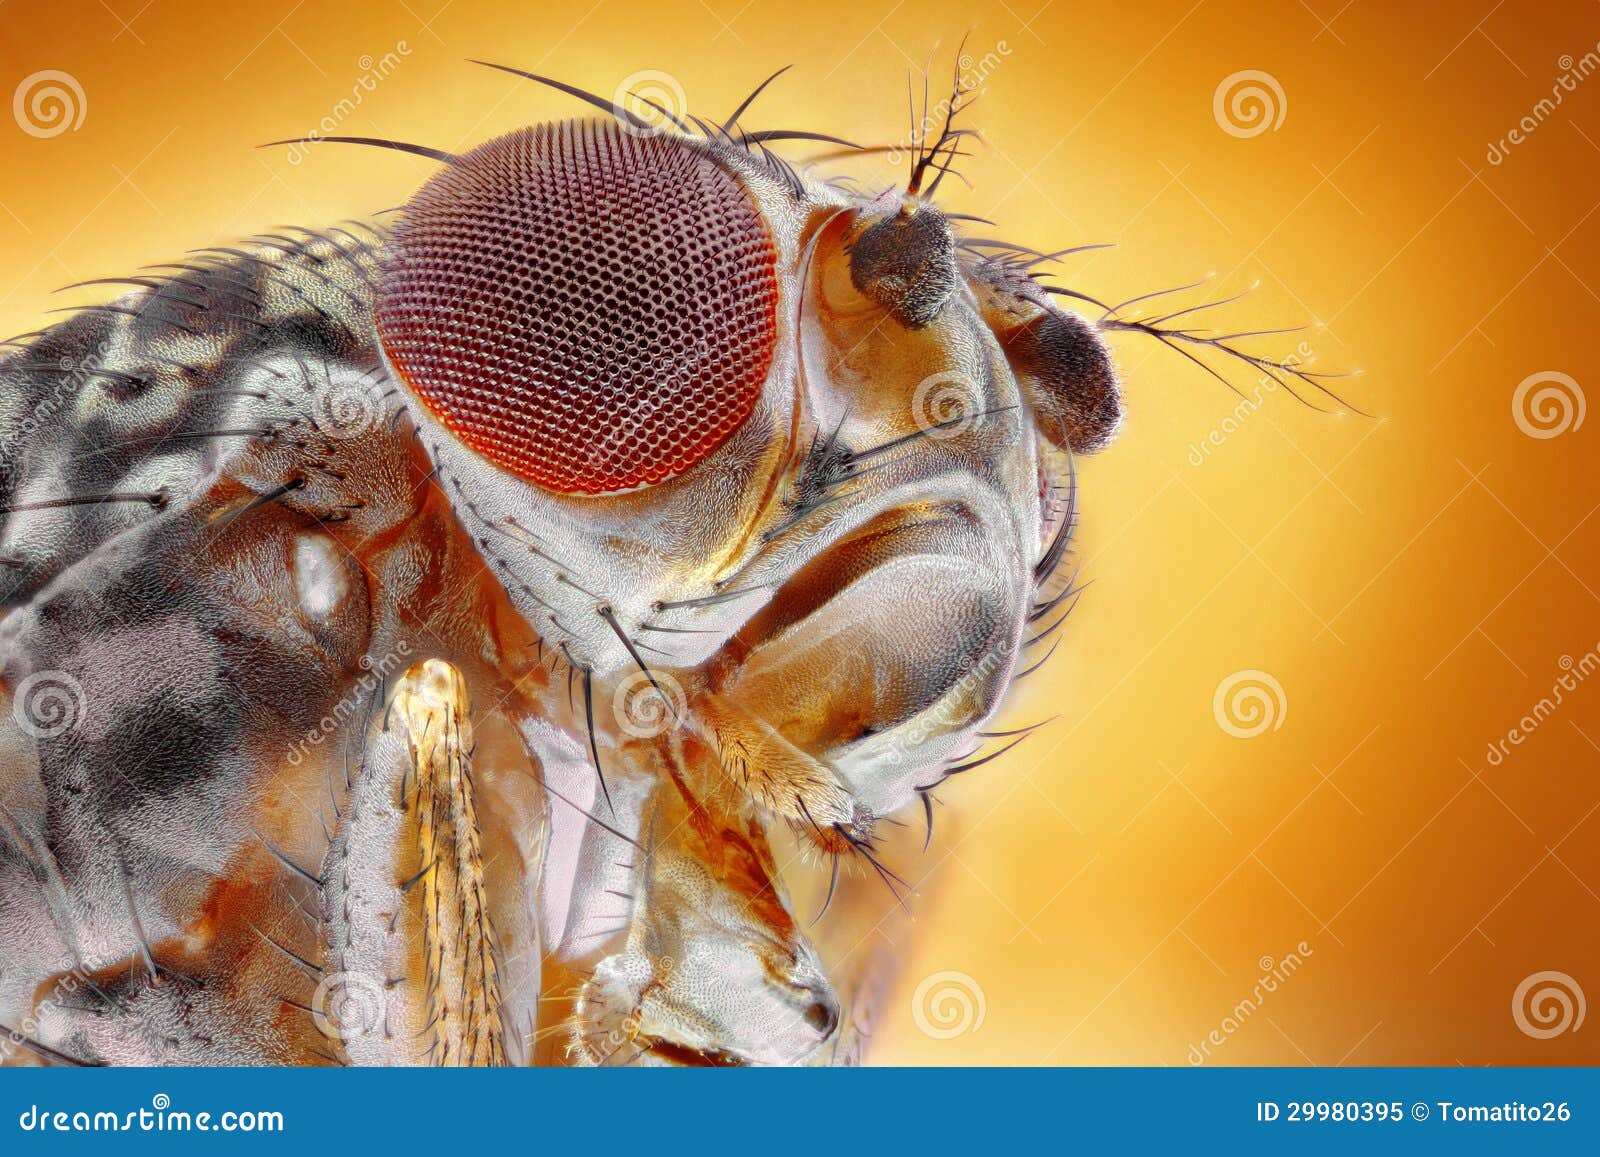 fruit fly macro